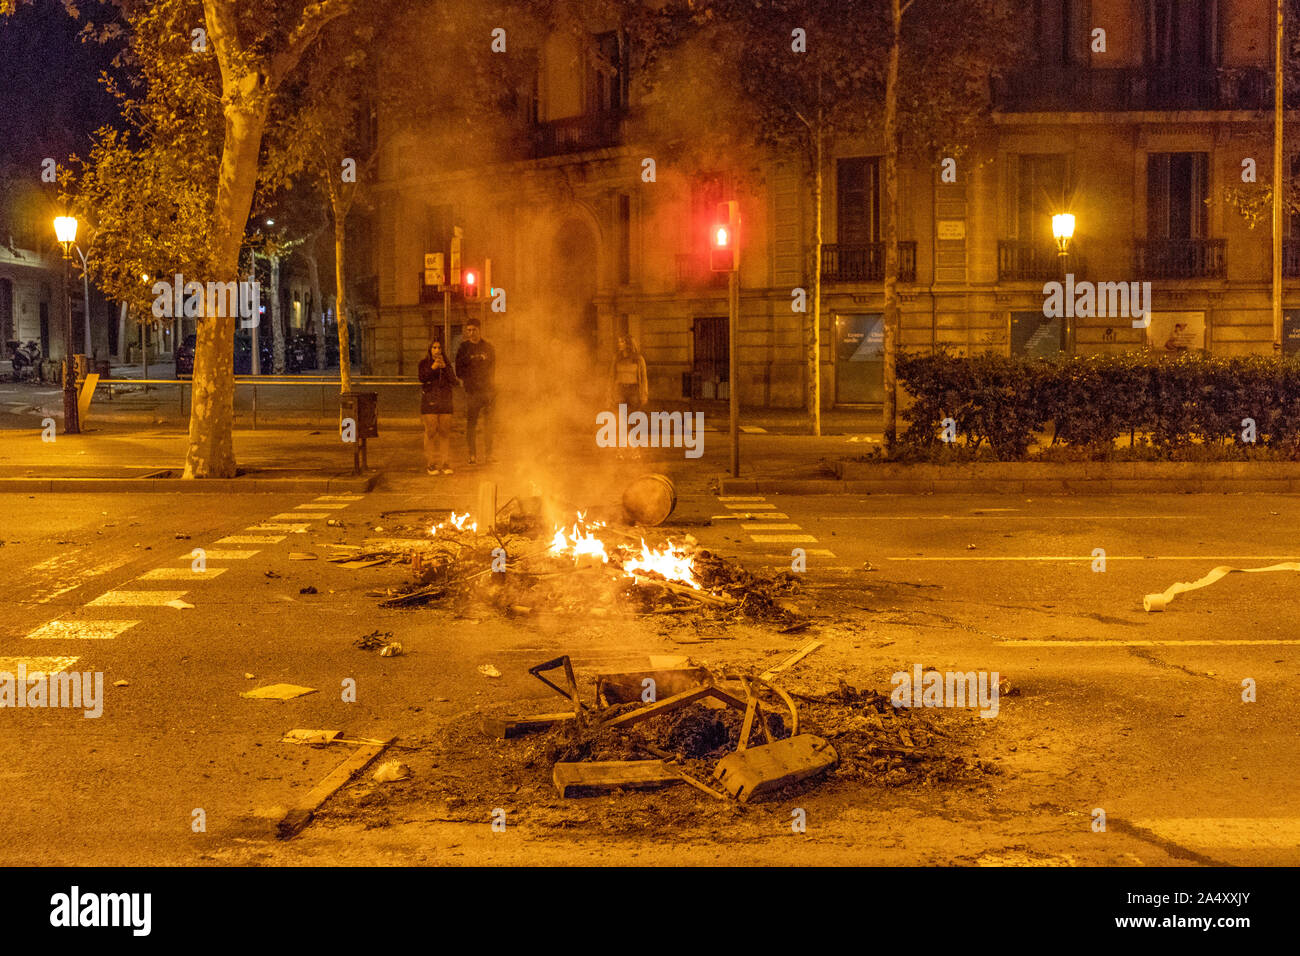 Barcelone, Espagne - 17 octobre 2019 : la gravure de rues de Barcelone au cours de la troisième nuit de protester une nouvelle fois la condamnation judiciaire contre le leader Catalan pour proclamer l'indépendance de l'Espagne Crédit : Dino Geromella/Alamy Live News Banque D'Images